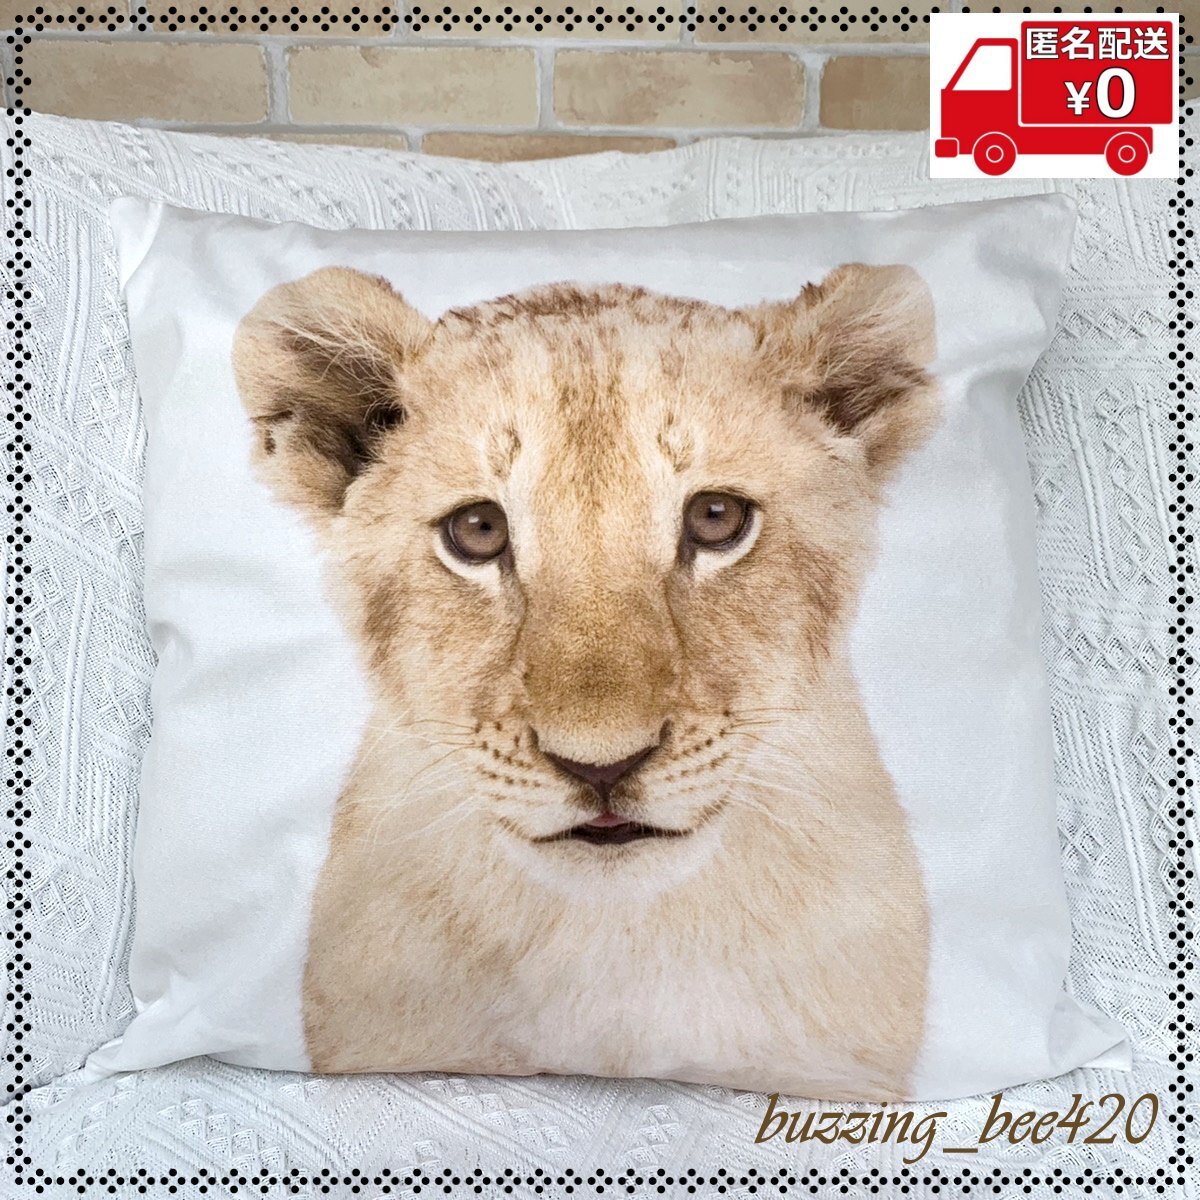 【在庫処分】クッションカバー ライオン 45×45cm おしゃれ かわいい アニマル 動物 インテリア カバー 13